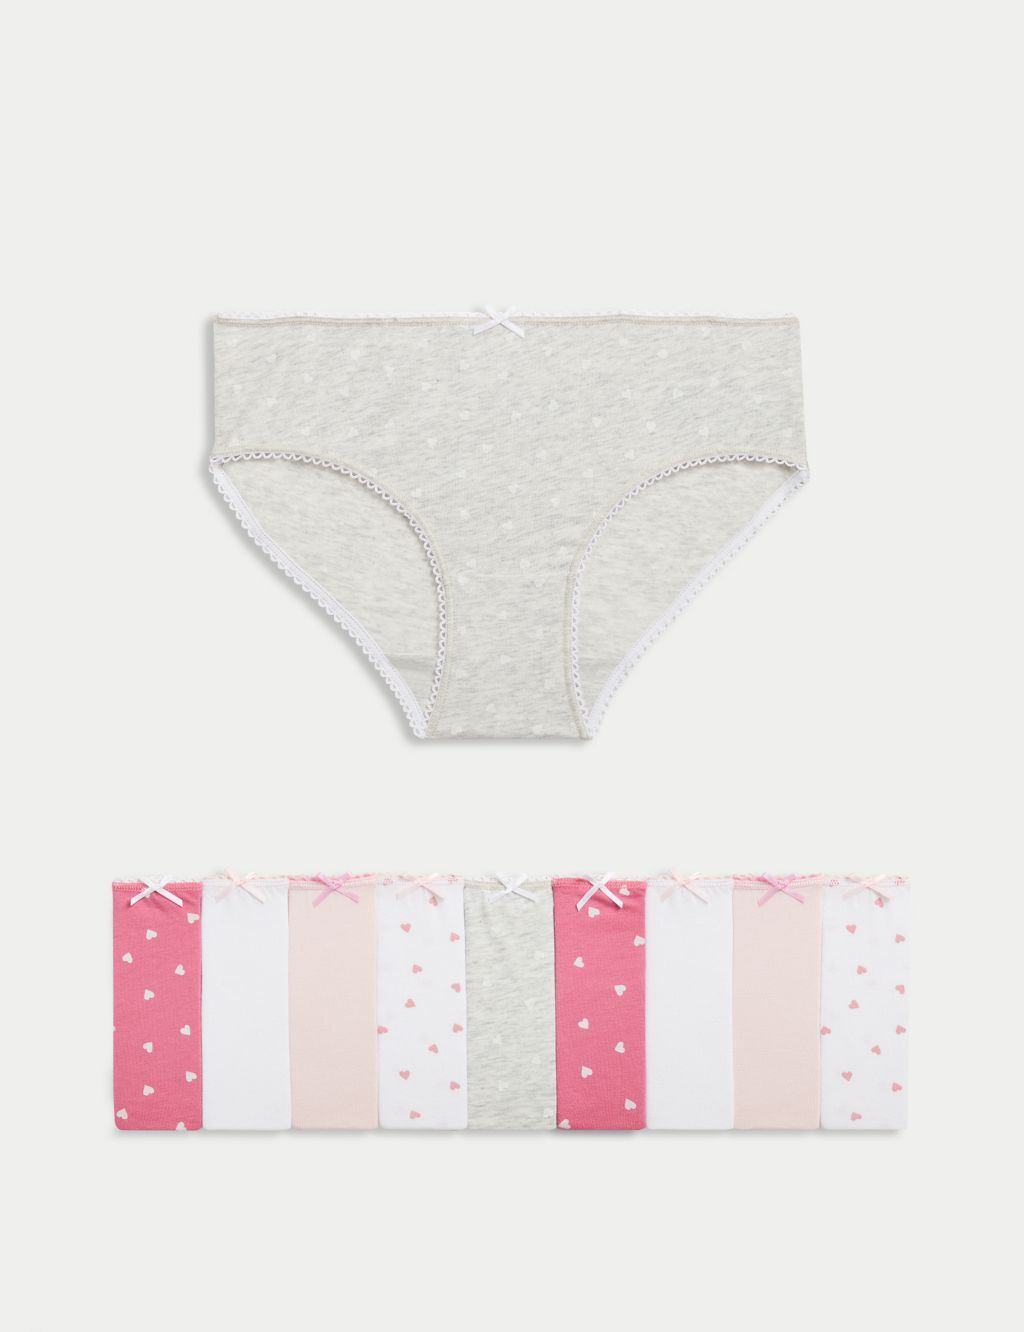 mijaja 6Pcs Girls' Pure Cotton Brief Underwear for Little Girls 6